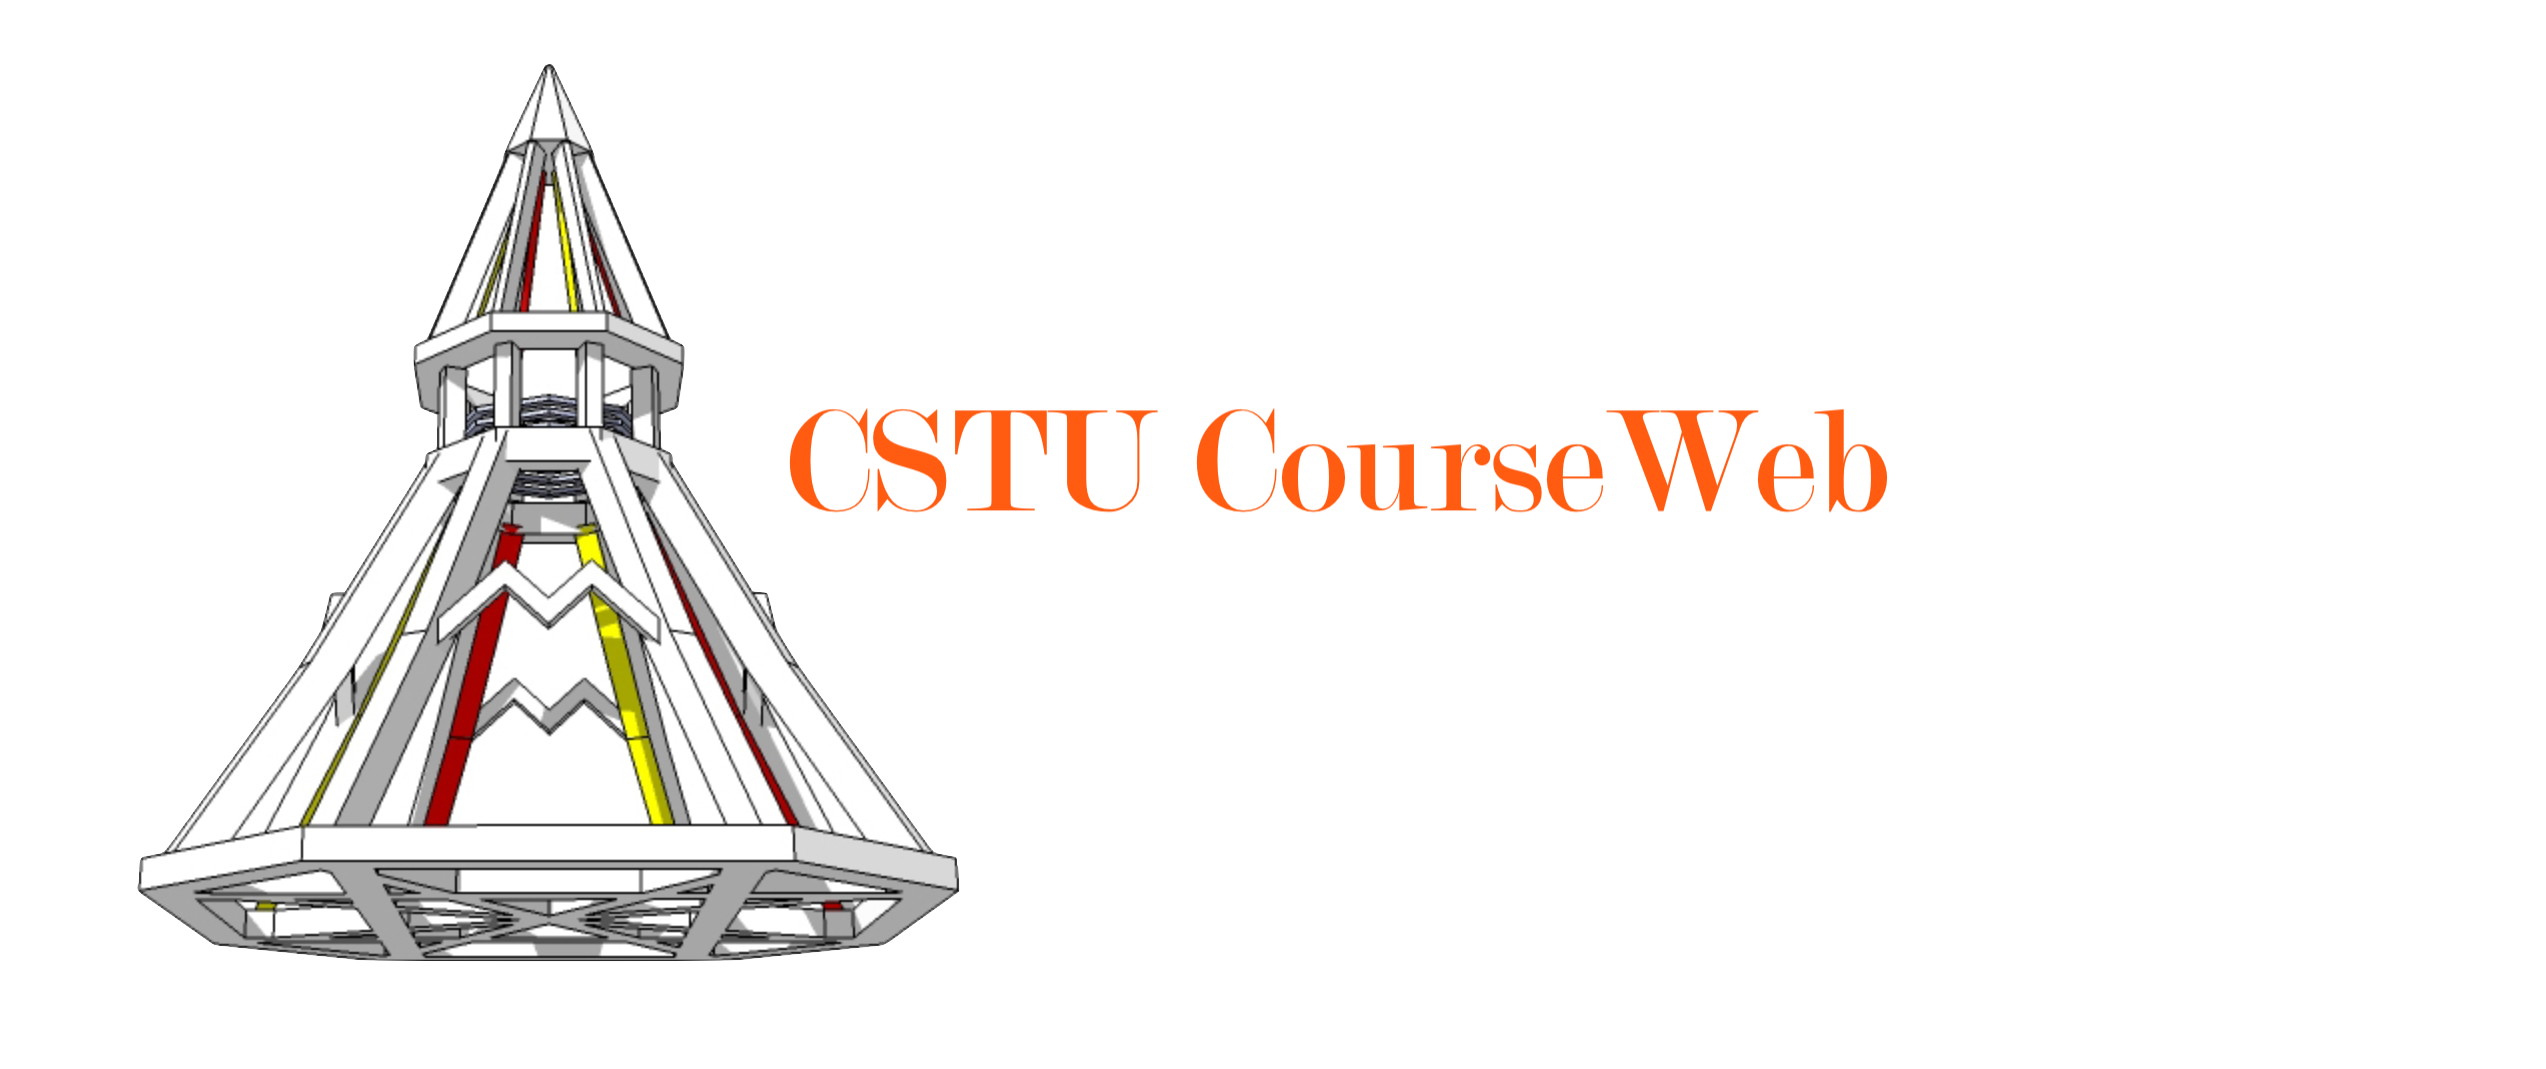 Courseweb CSTU